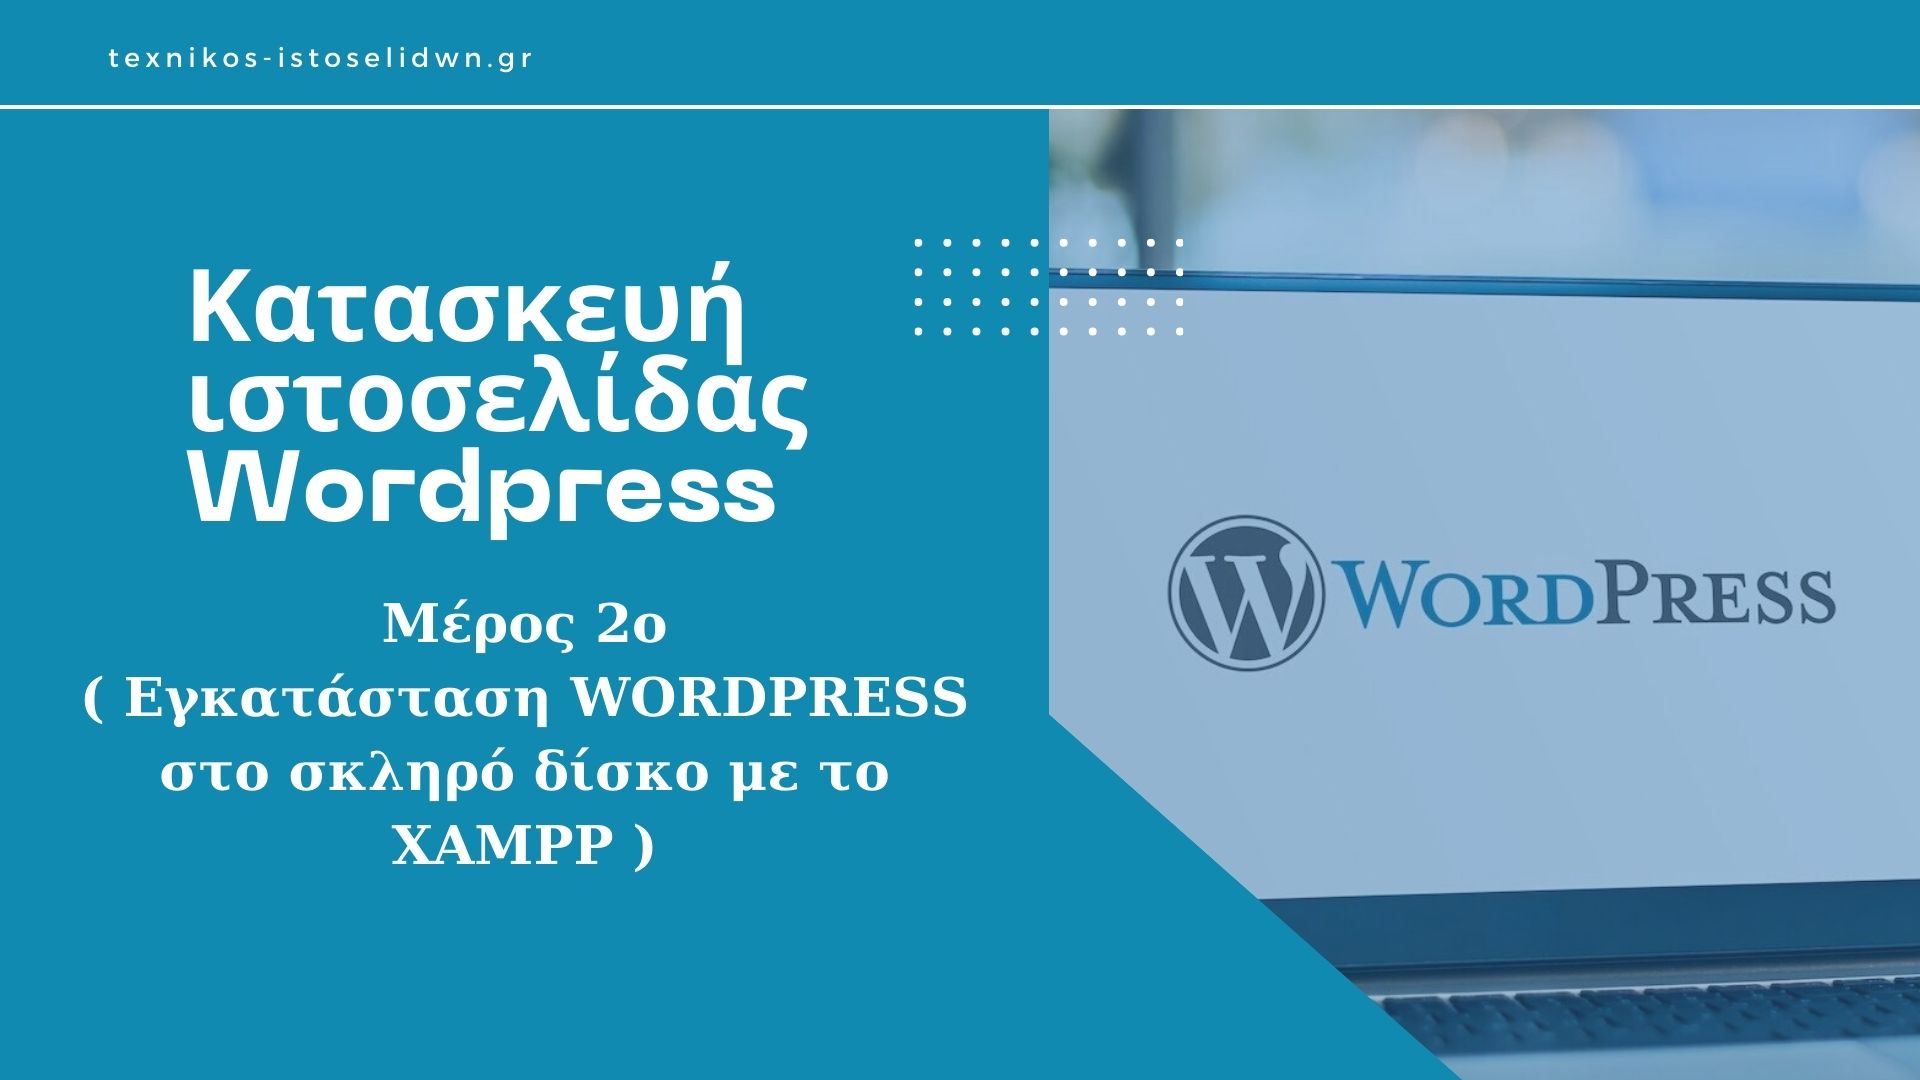 Κατασκευή ιστοσελίδας WordPress - Μέρος 2ο (εγκατάσταση WORDPRESS στο σκληρό δίσκο με το XAMPP)